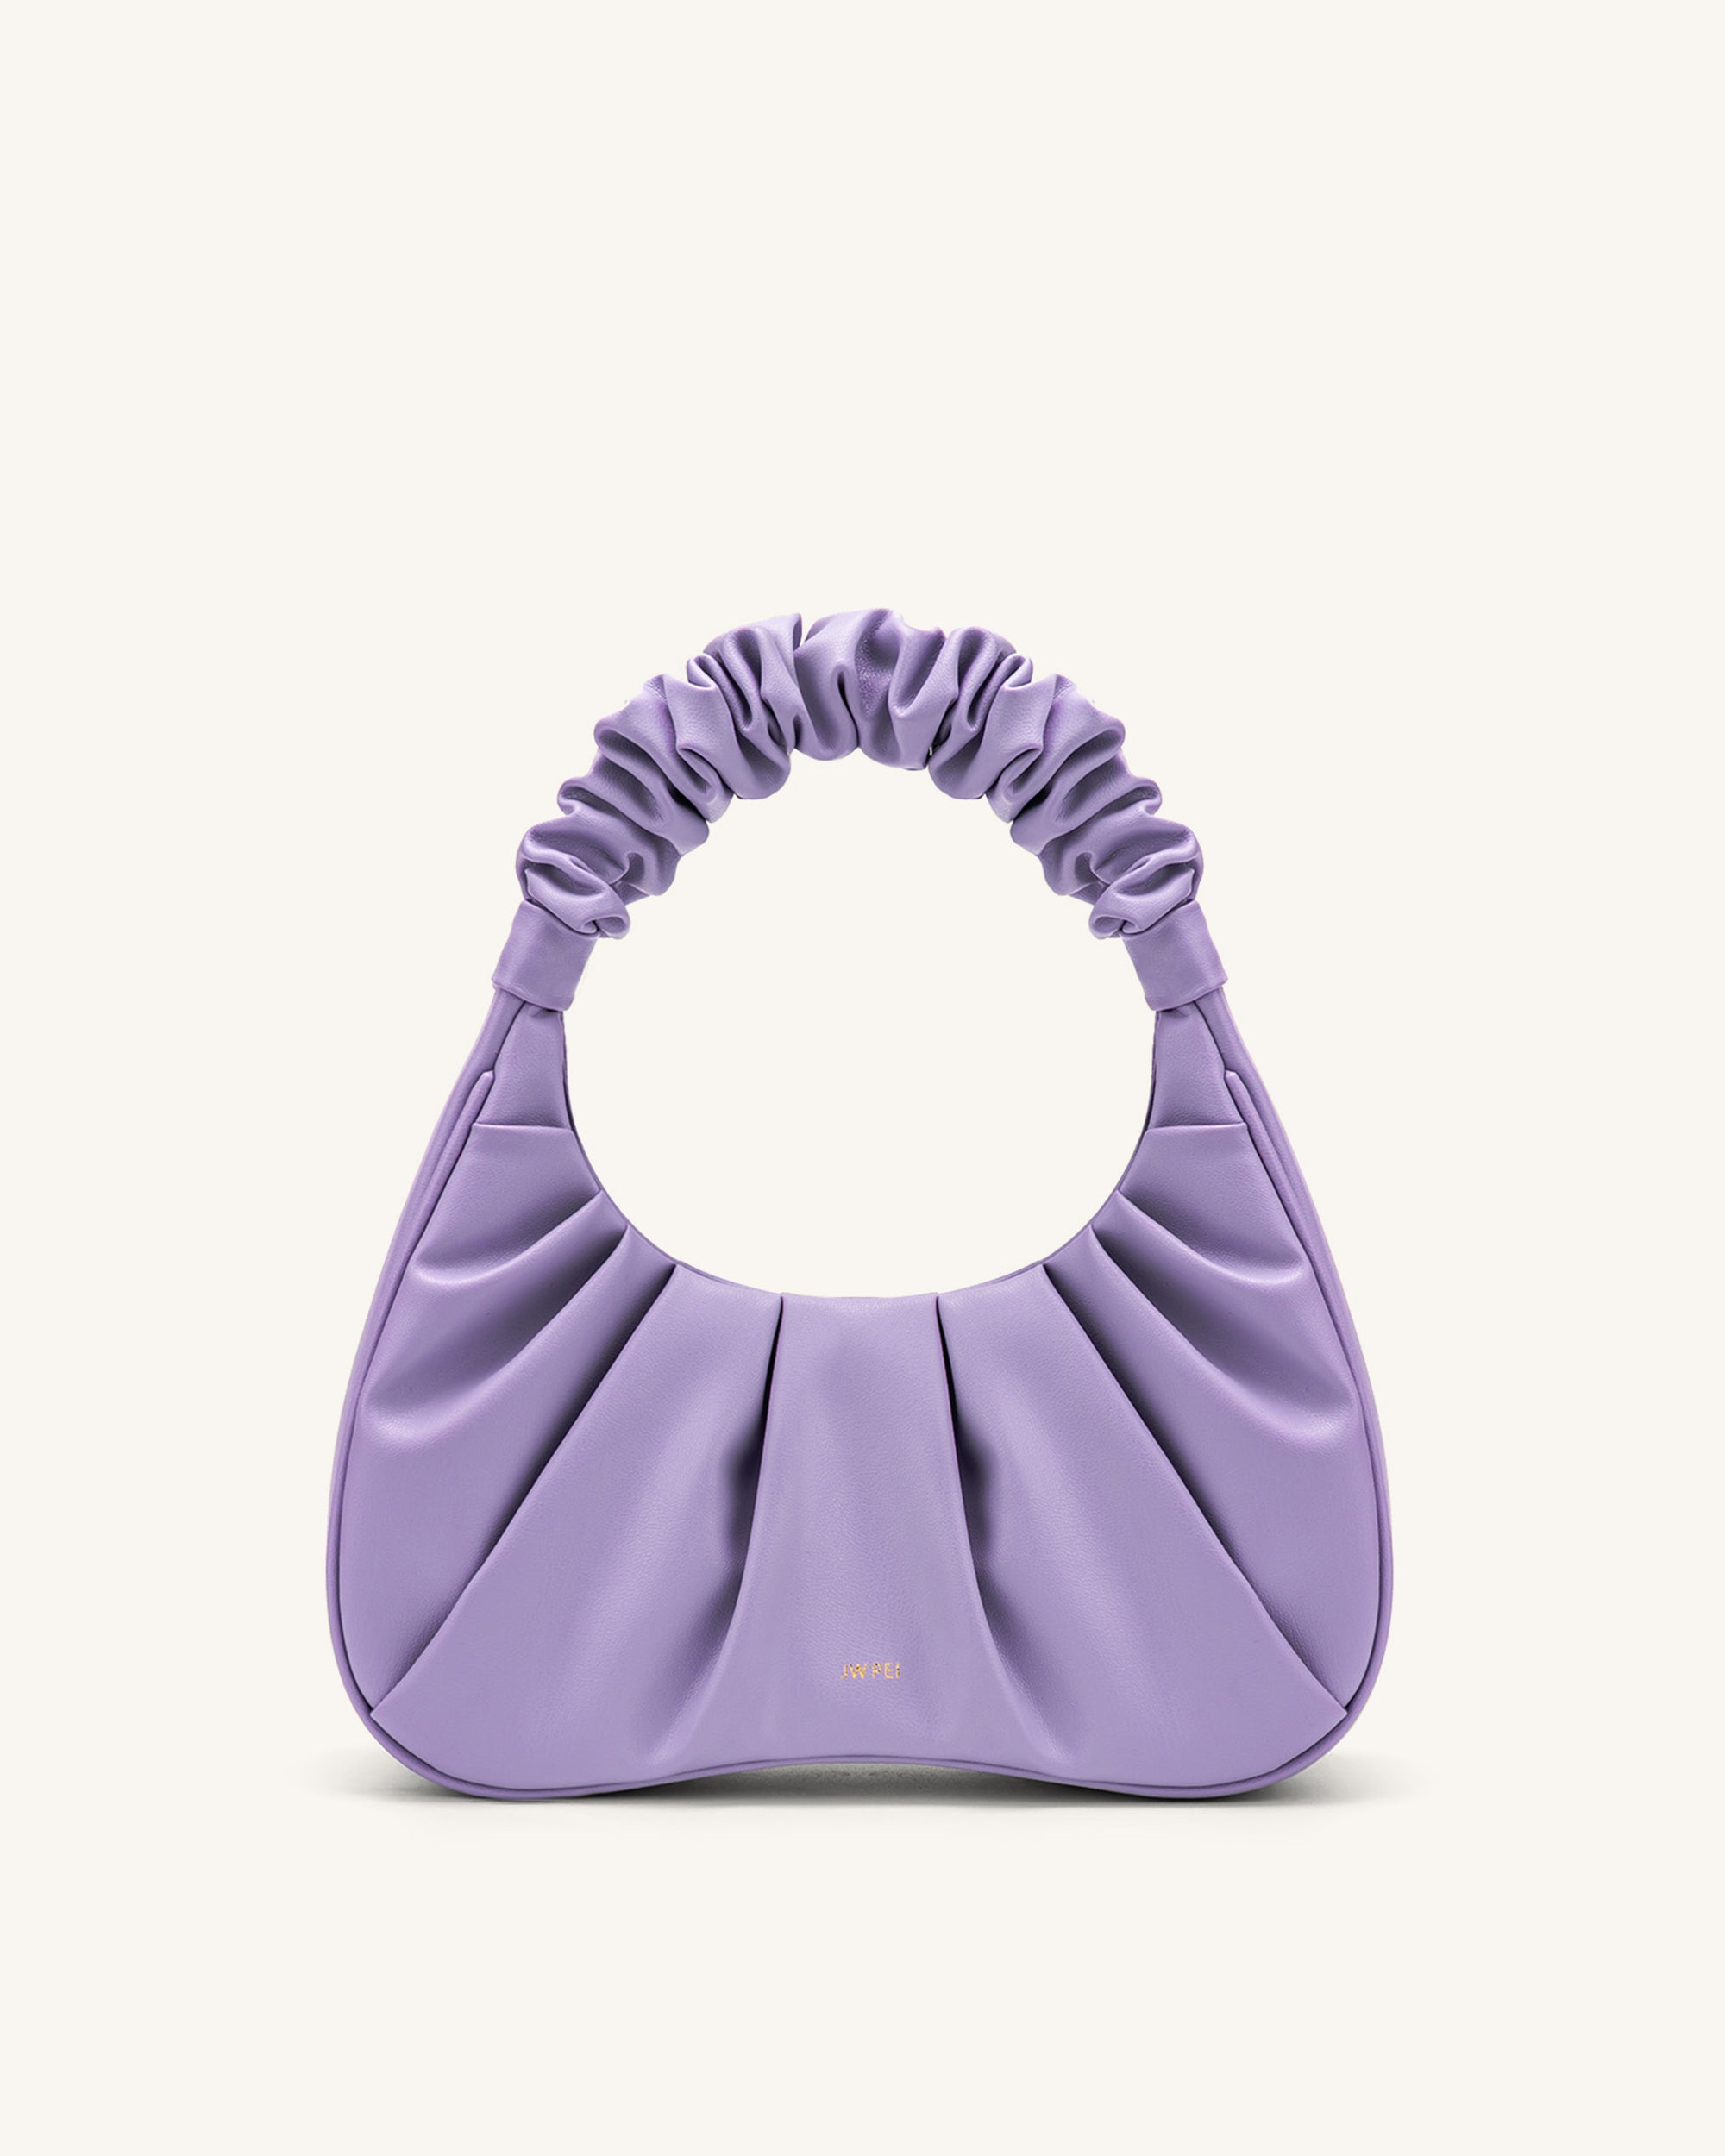 Anokhi Ada Violet PU Leather Purse/Sling Bag /Handbag for Girls and Wo –  Anokhiada.com